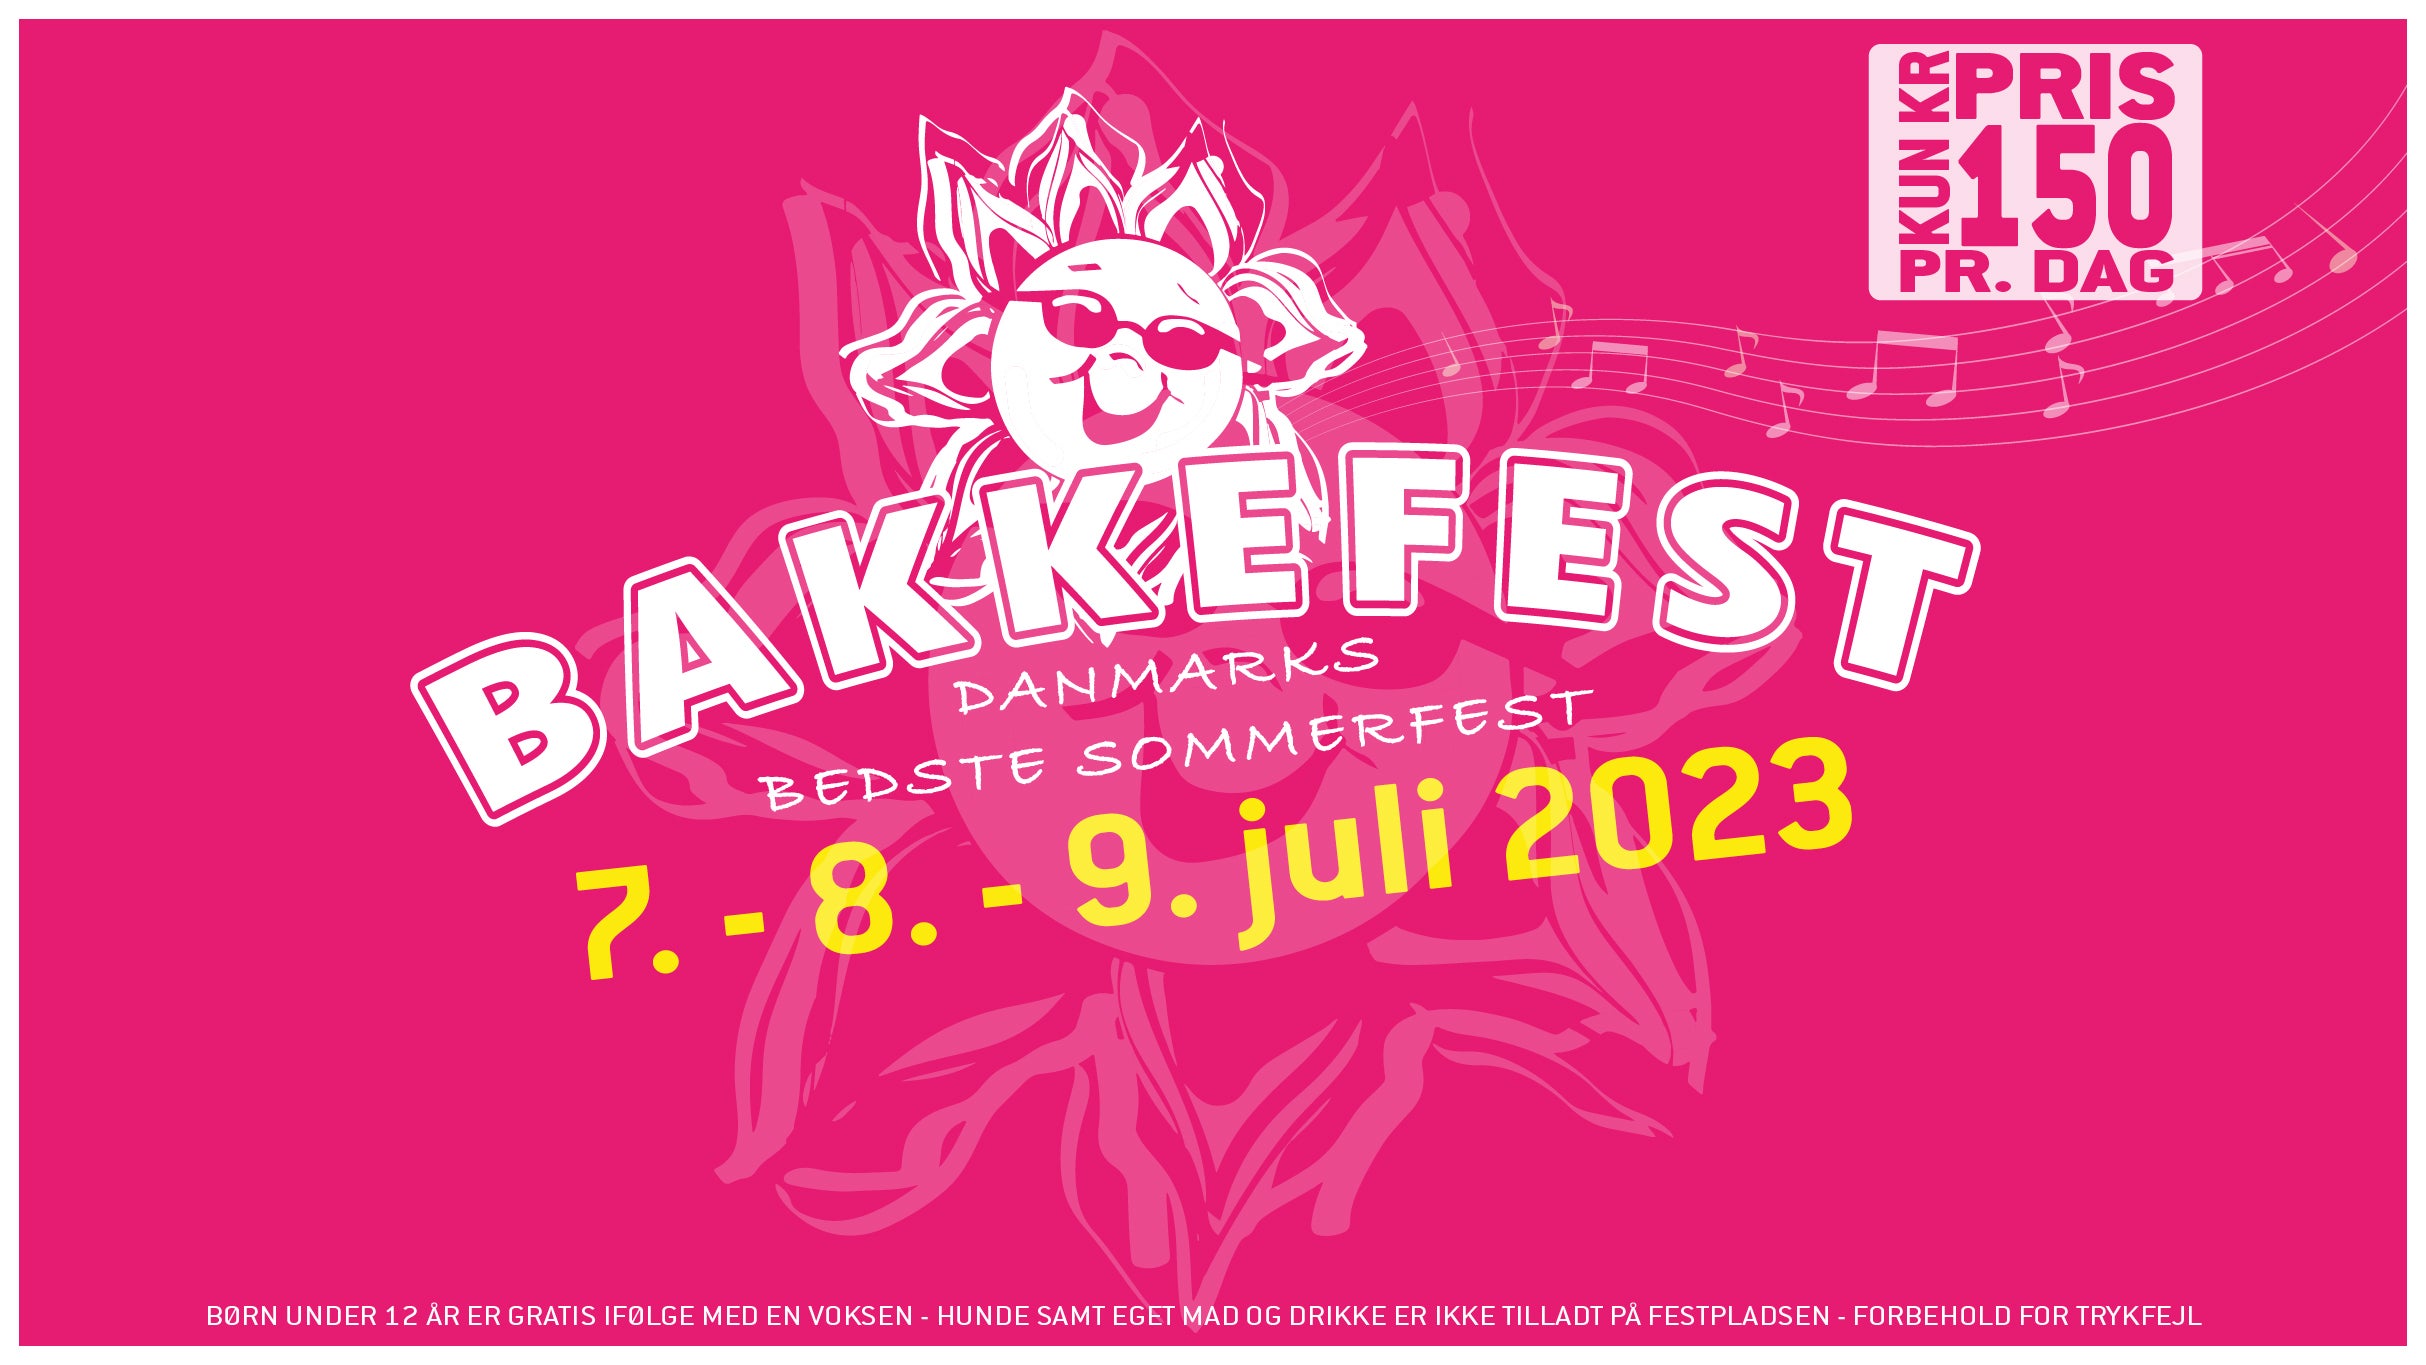 Bakkefest presale information on freepresalepasswords.com